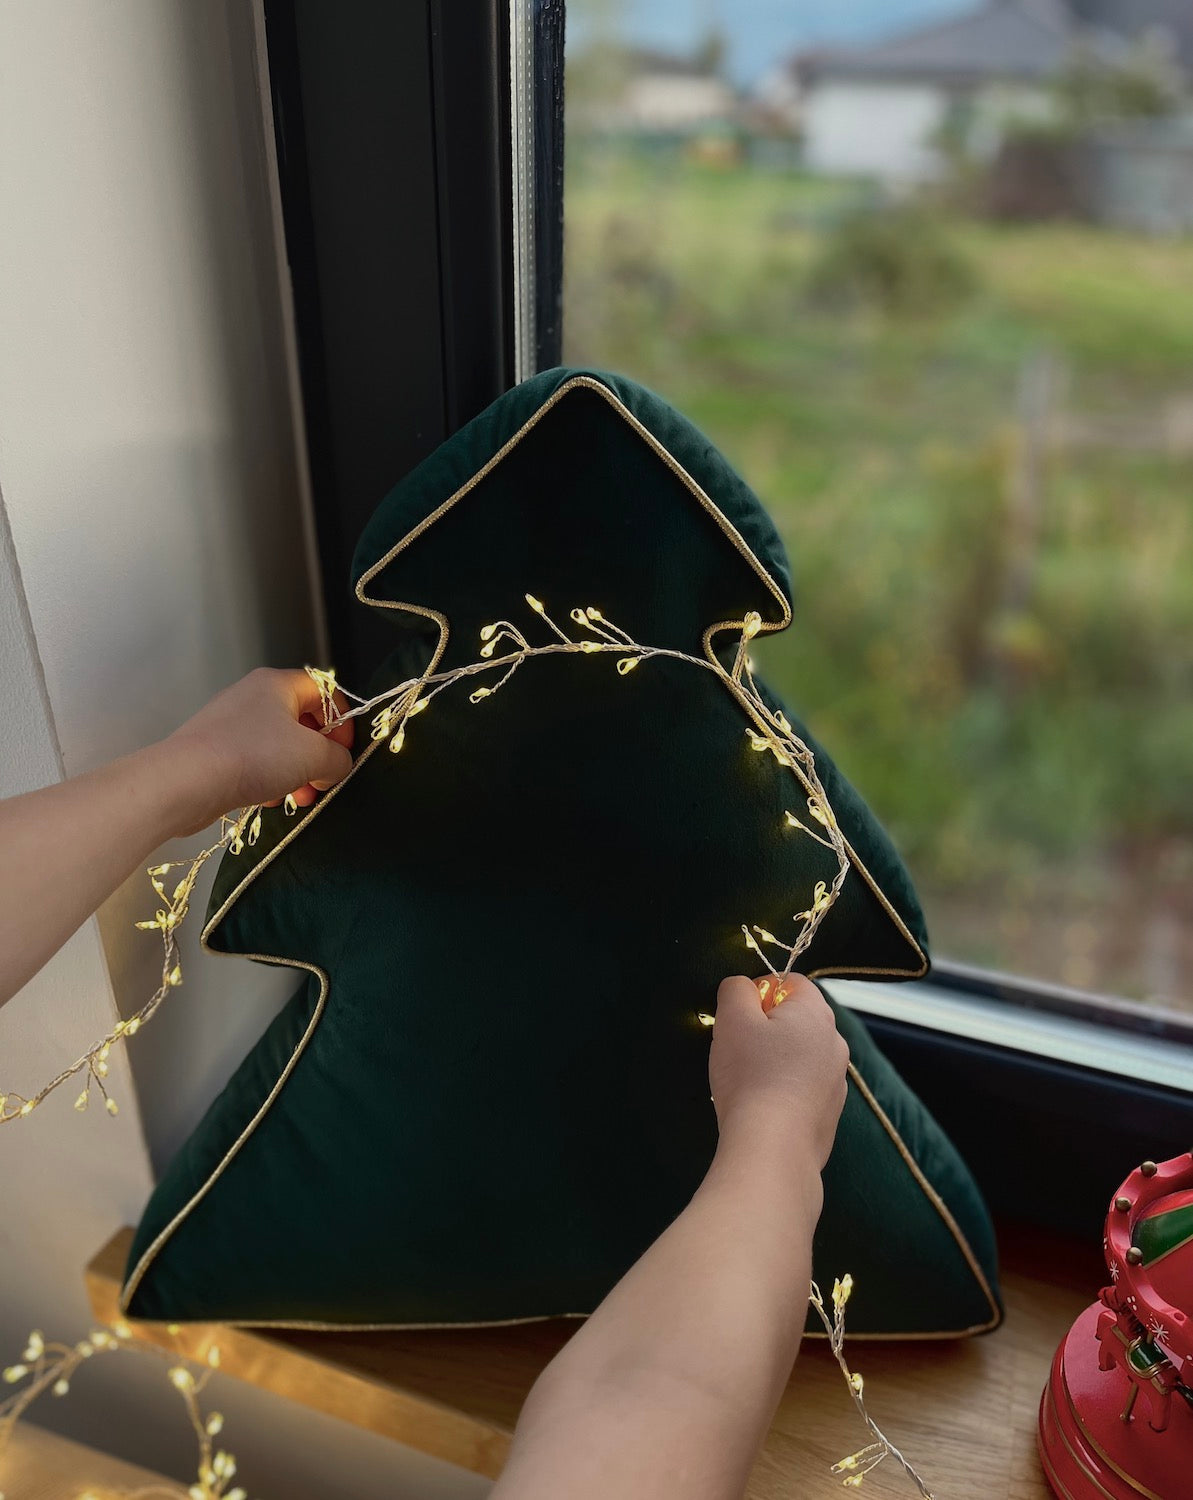 Poduszka choinka zielona od Bettys Home jako świąteczna dekoracja okna